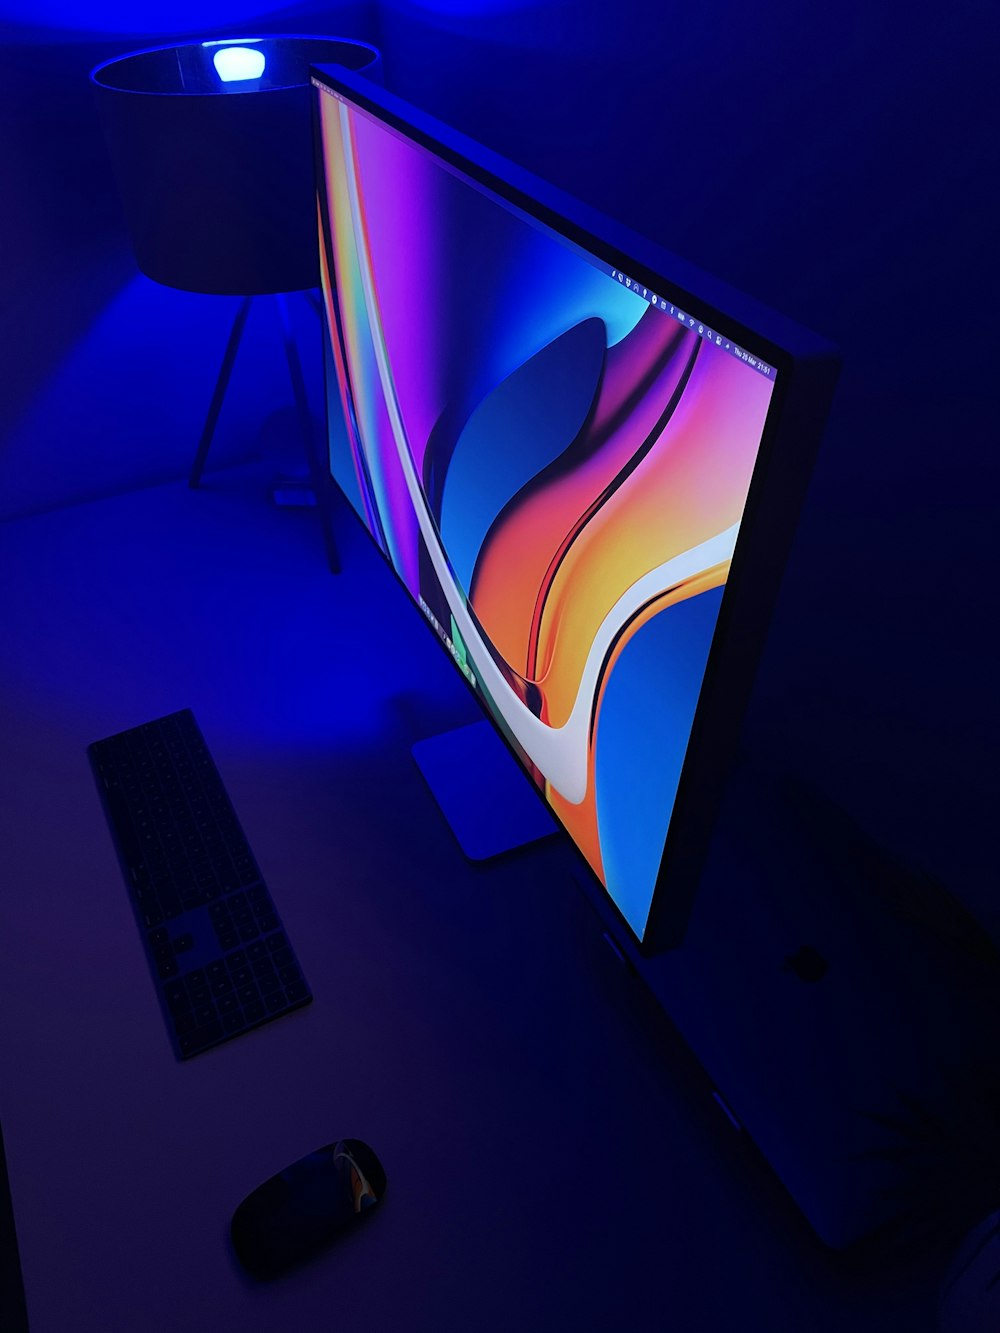 Televisor de pantalla plana negro encendido que muestra azul y rojo